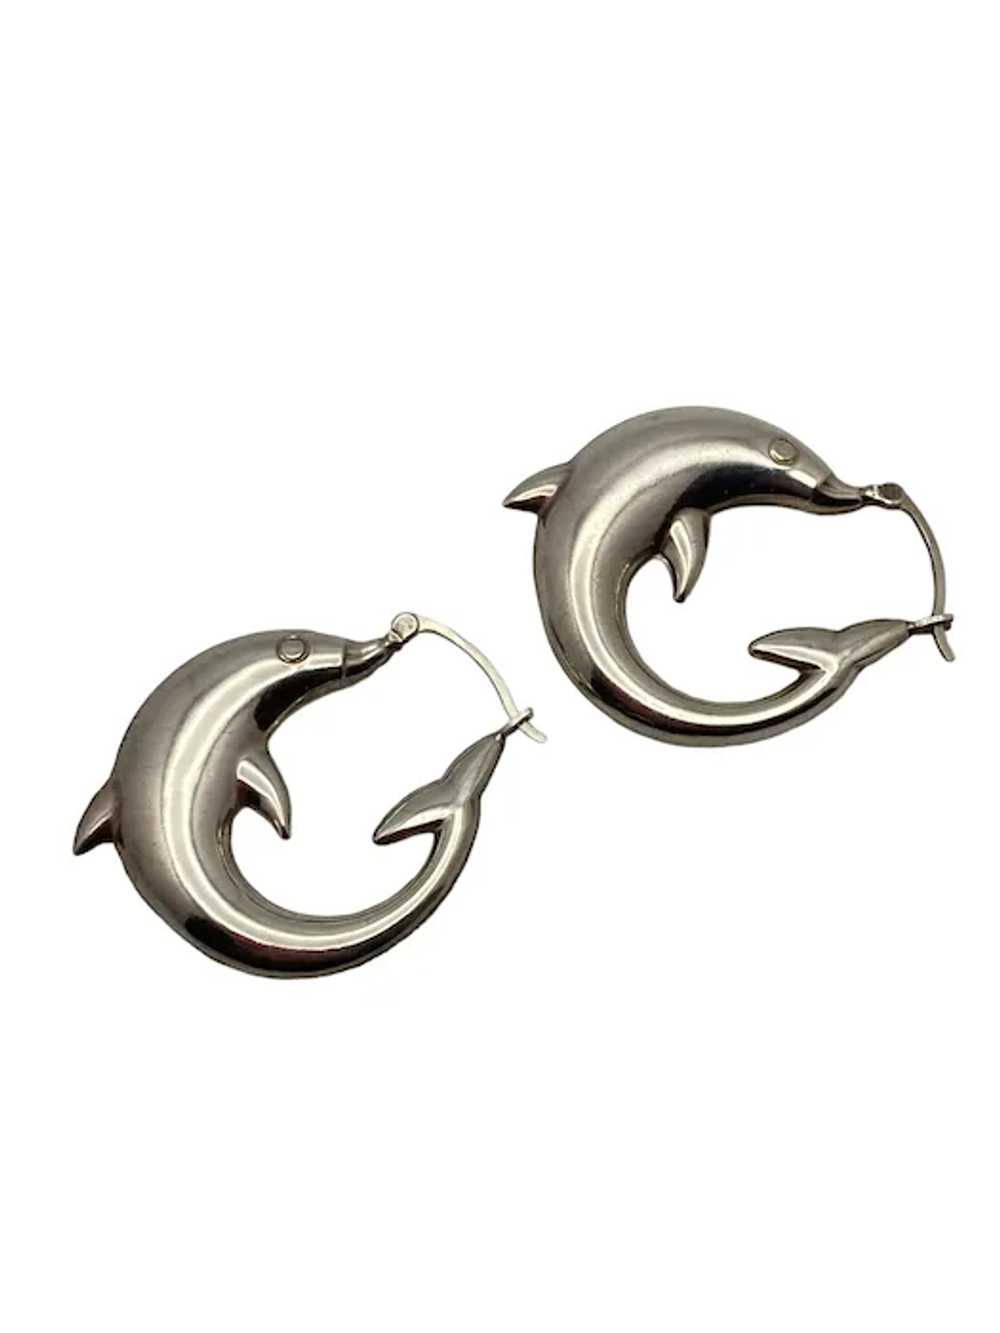 Pair of Sterling Silver Dolphin Hoop Earrings - image 5